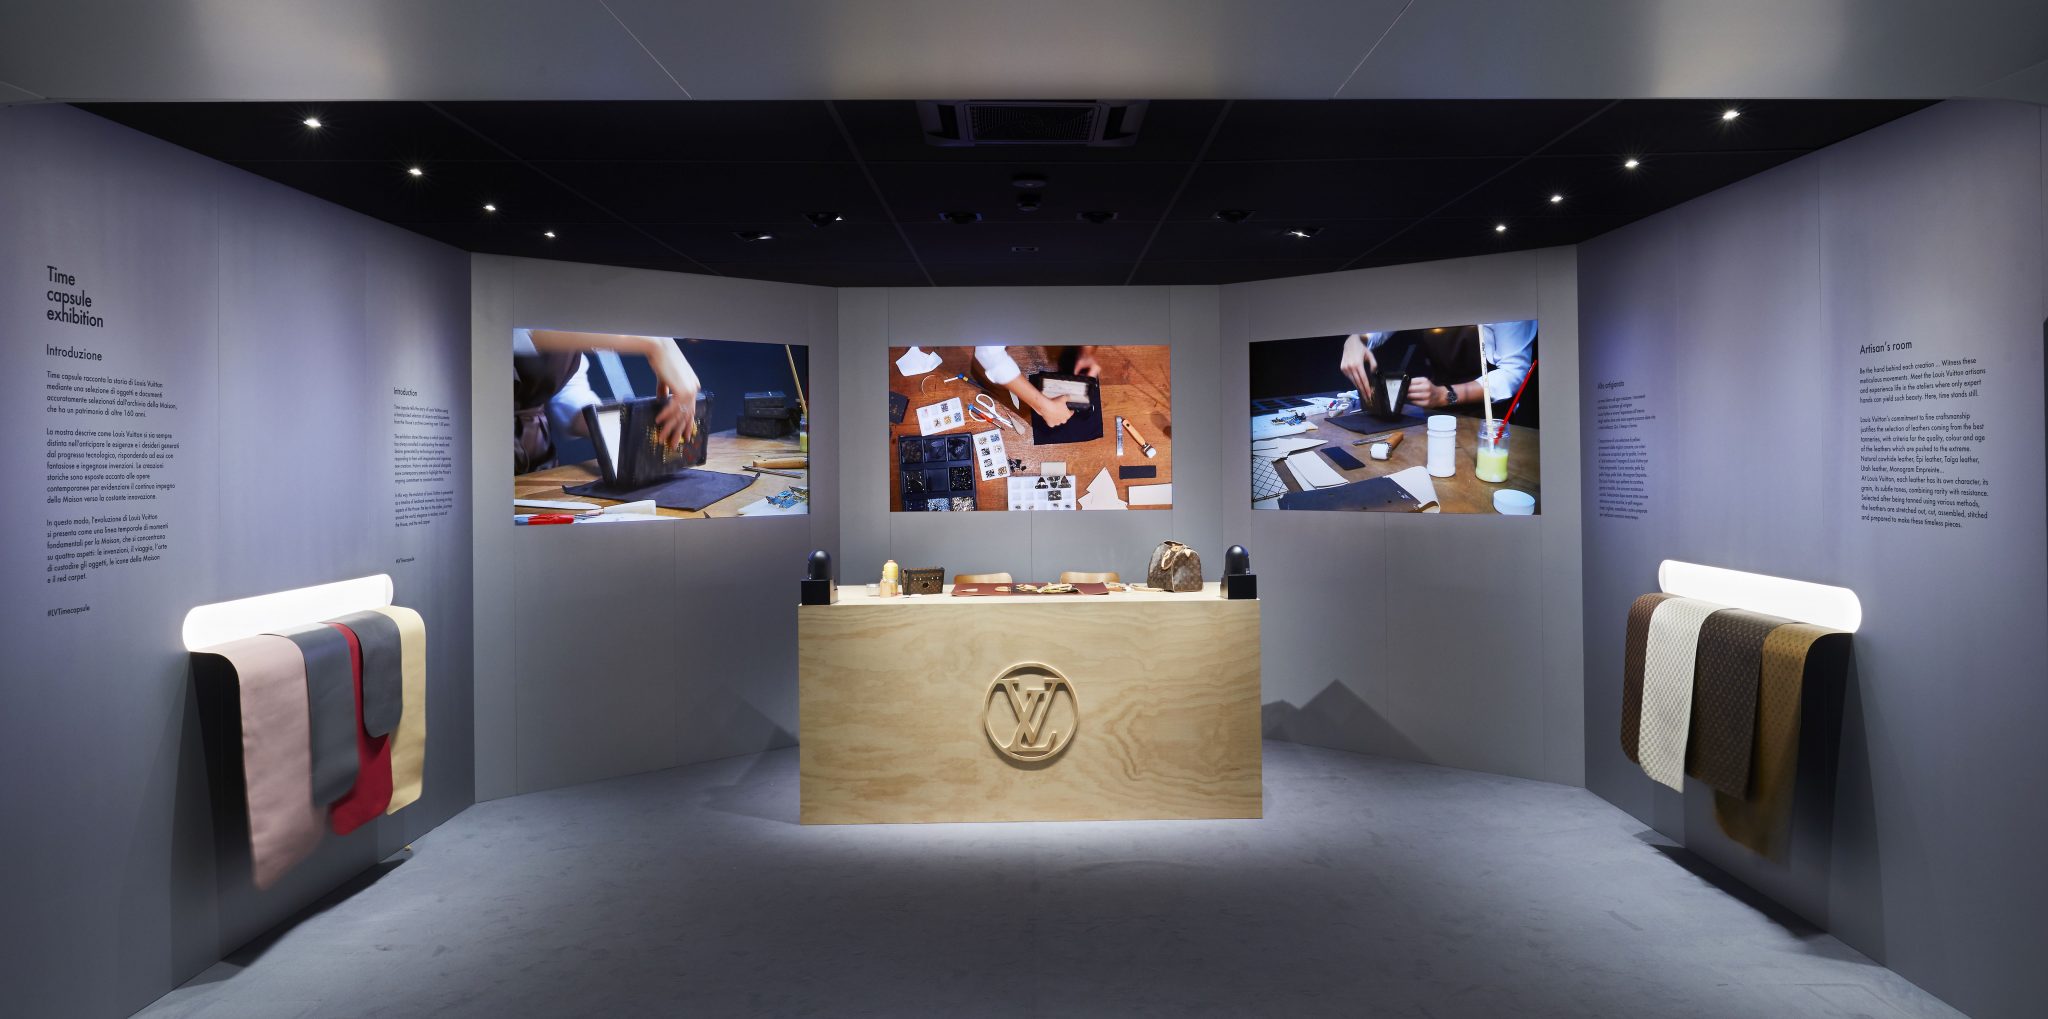 L’arte della maison intramontabile. Louis Vuitton presenta il progetto Time Capsule, a Milano